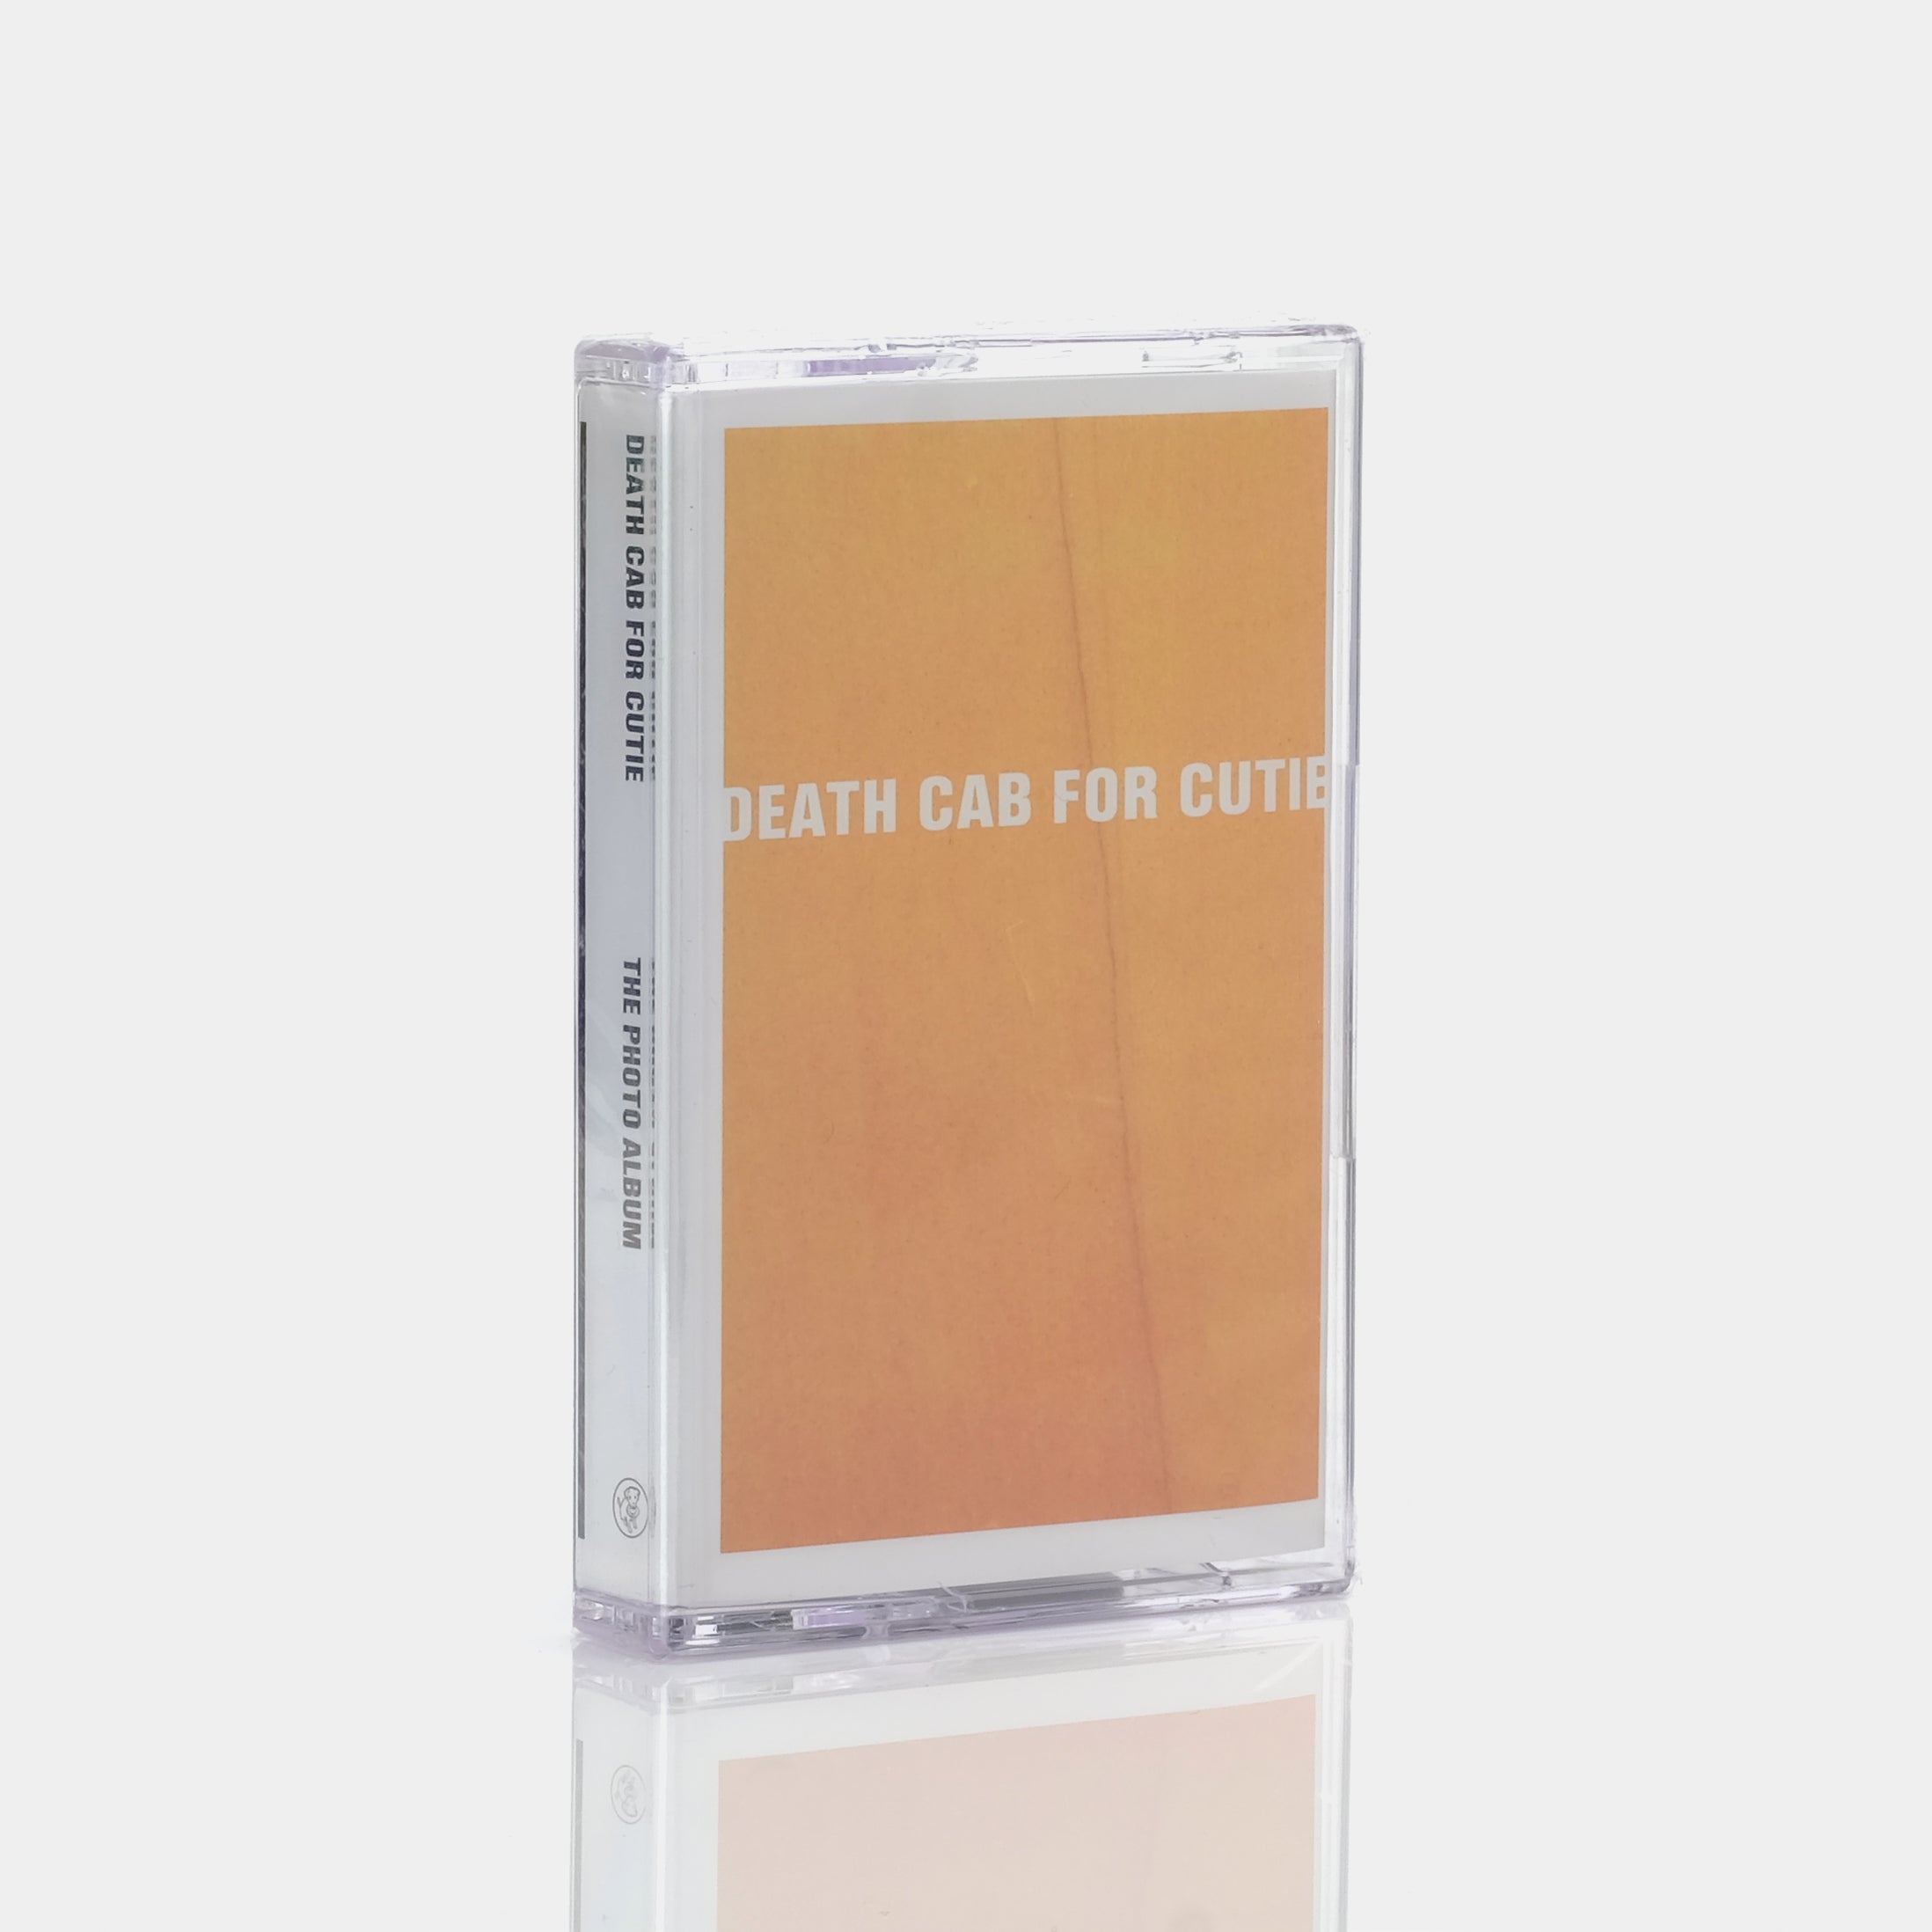 Death Cab For Cutie - The Photo Album Cassette Tape